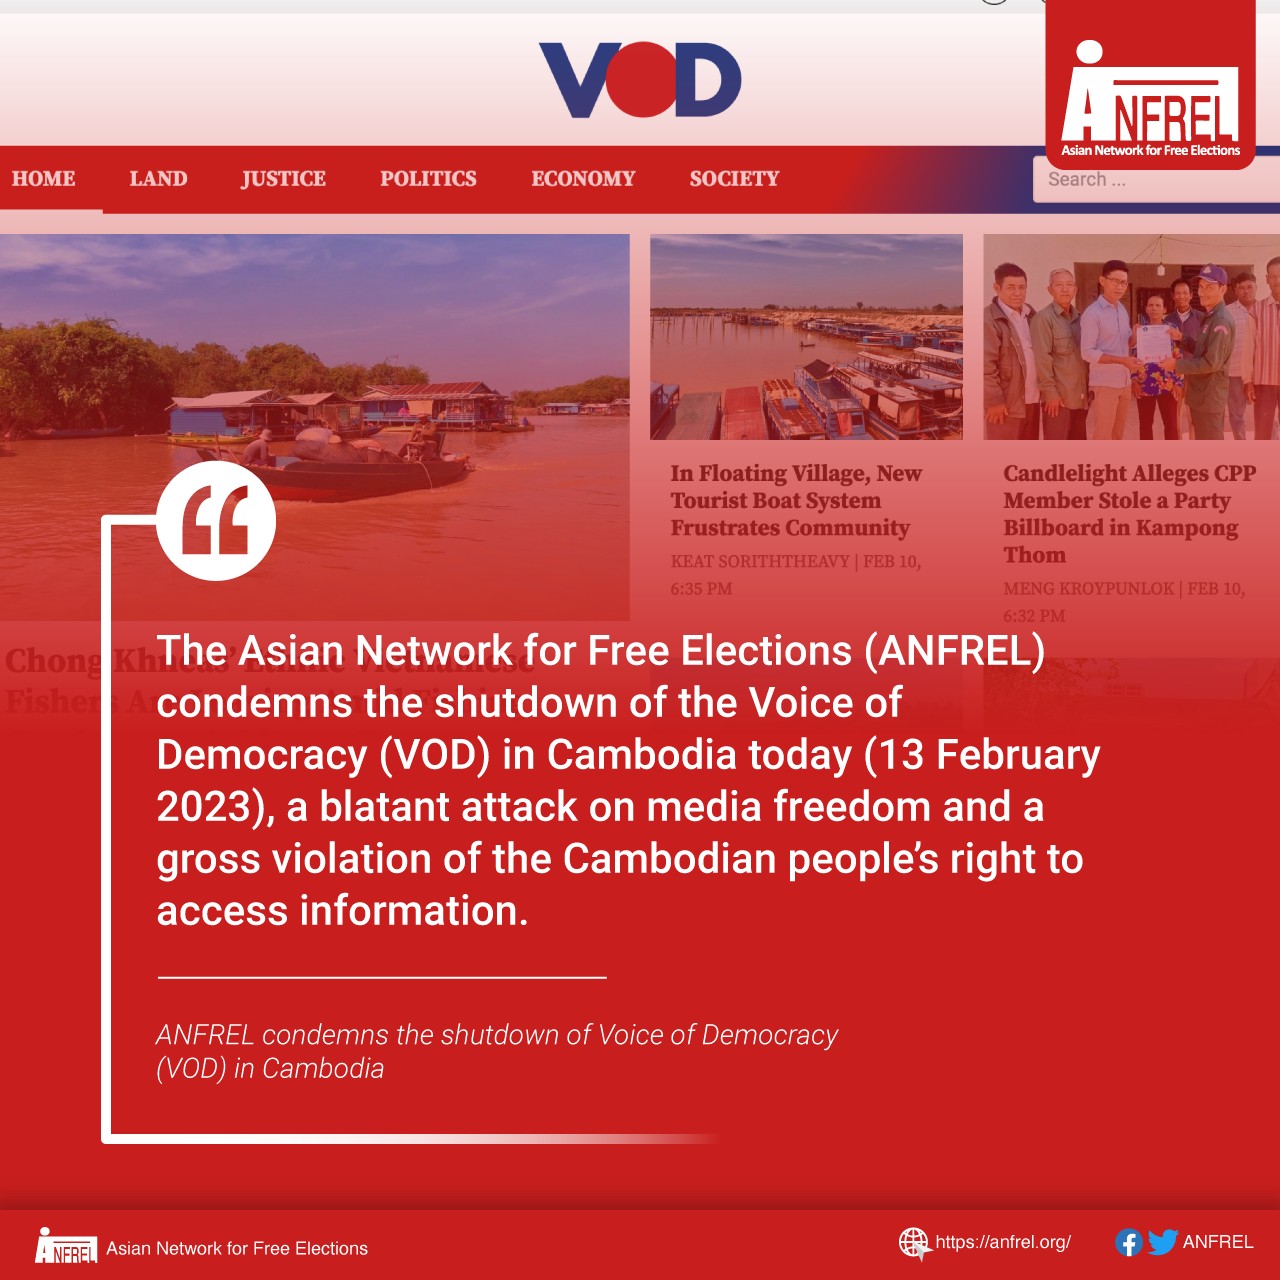 ANFREL condemns the shutdown of Voice of Democracy (VOD) in Cambodia Open Development Cambodia (ODC)